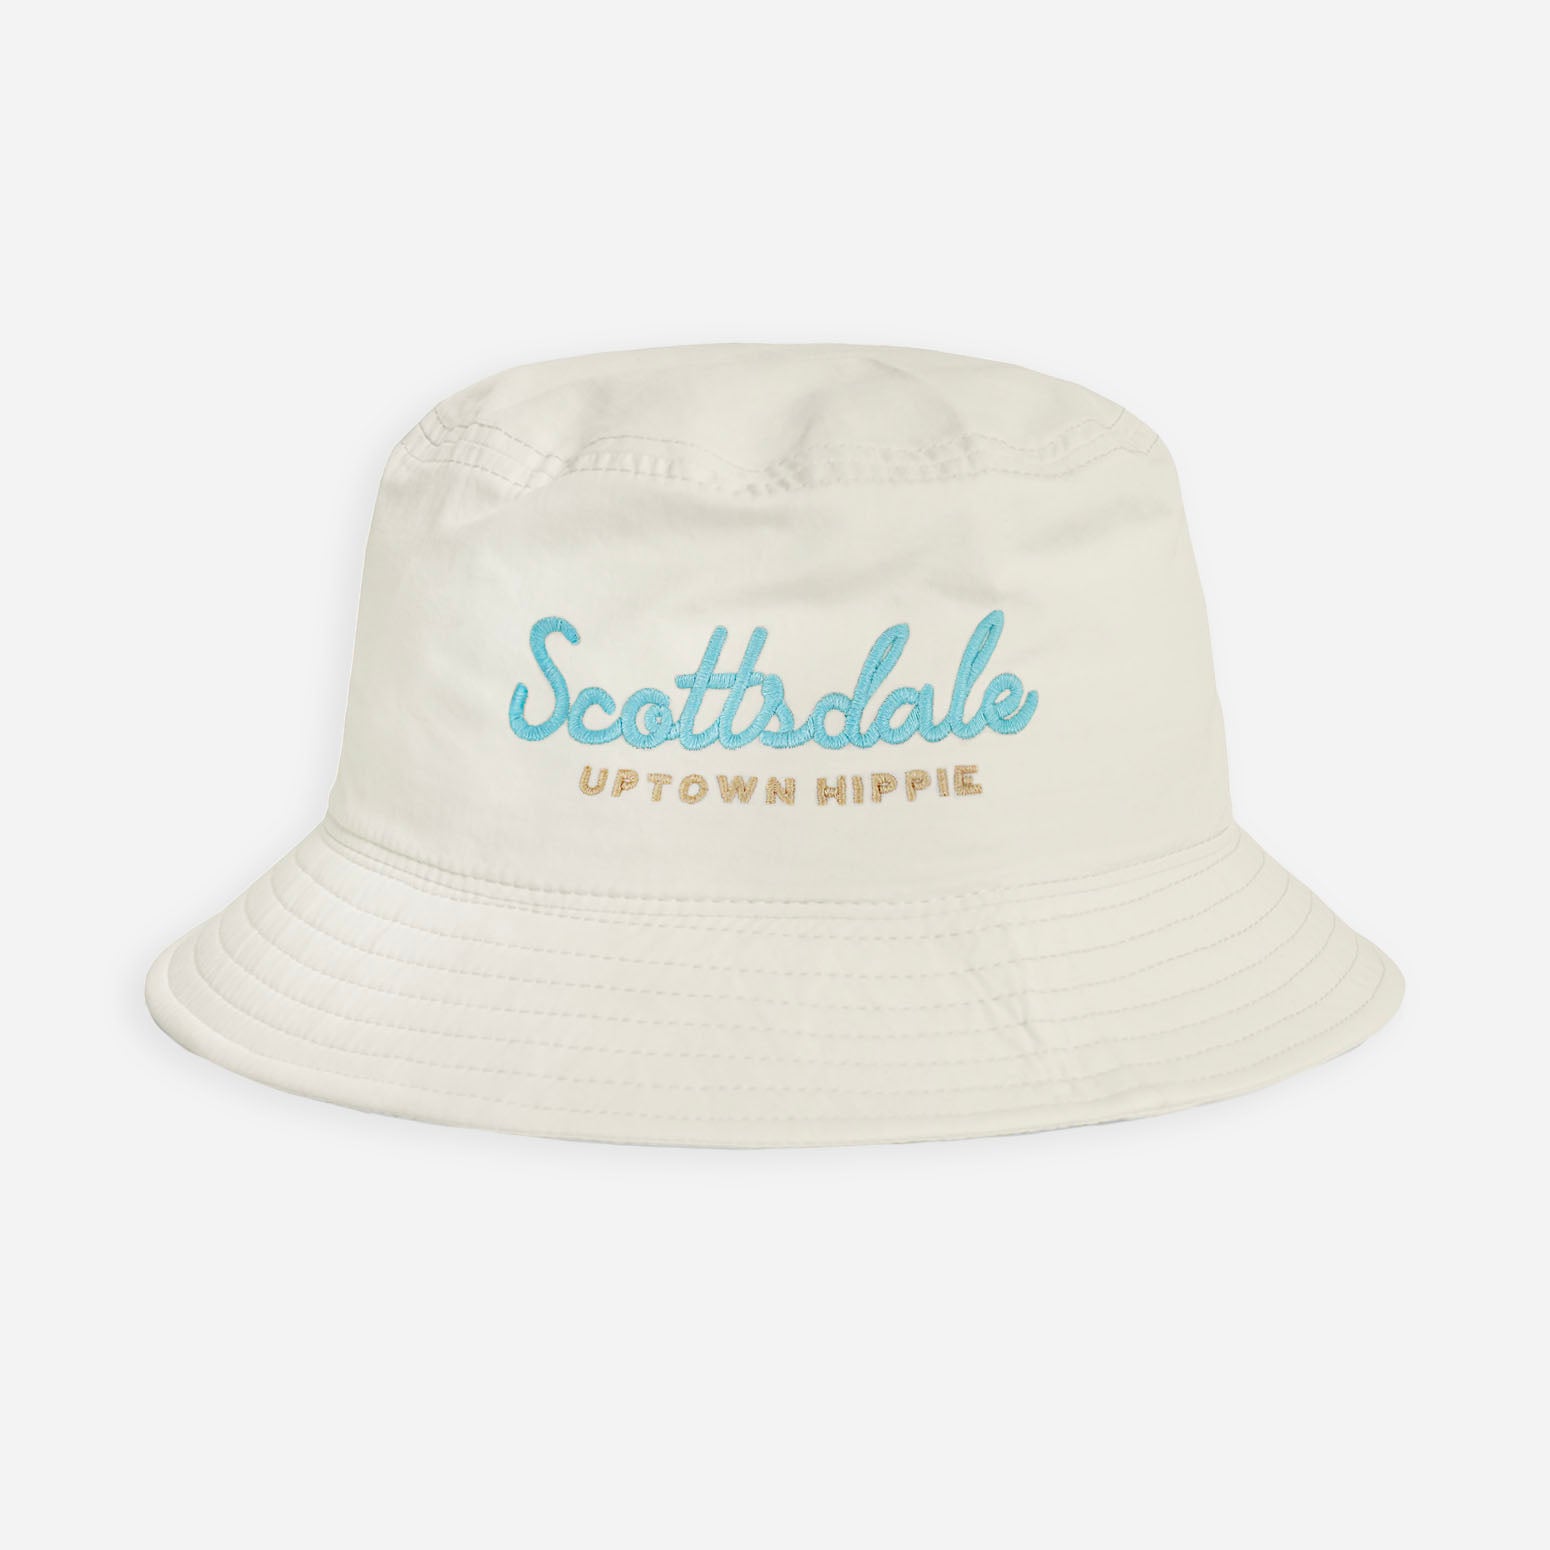 Scottsdale Bucket Hat (Ecru)